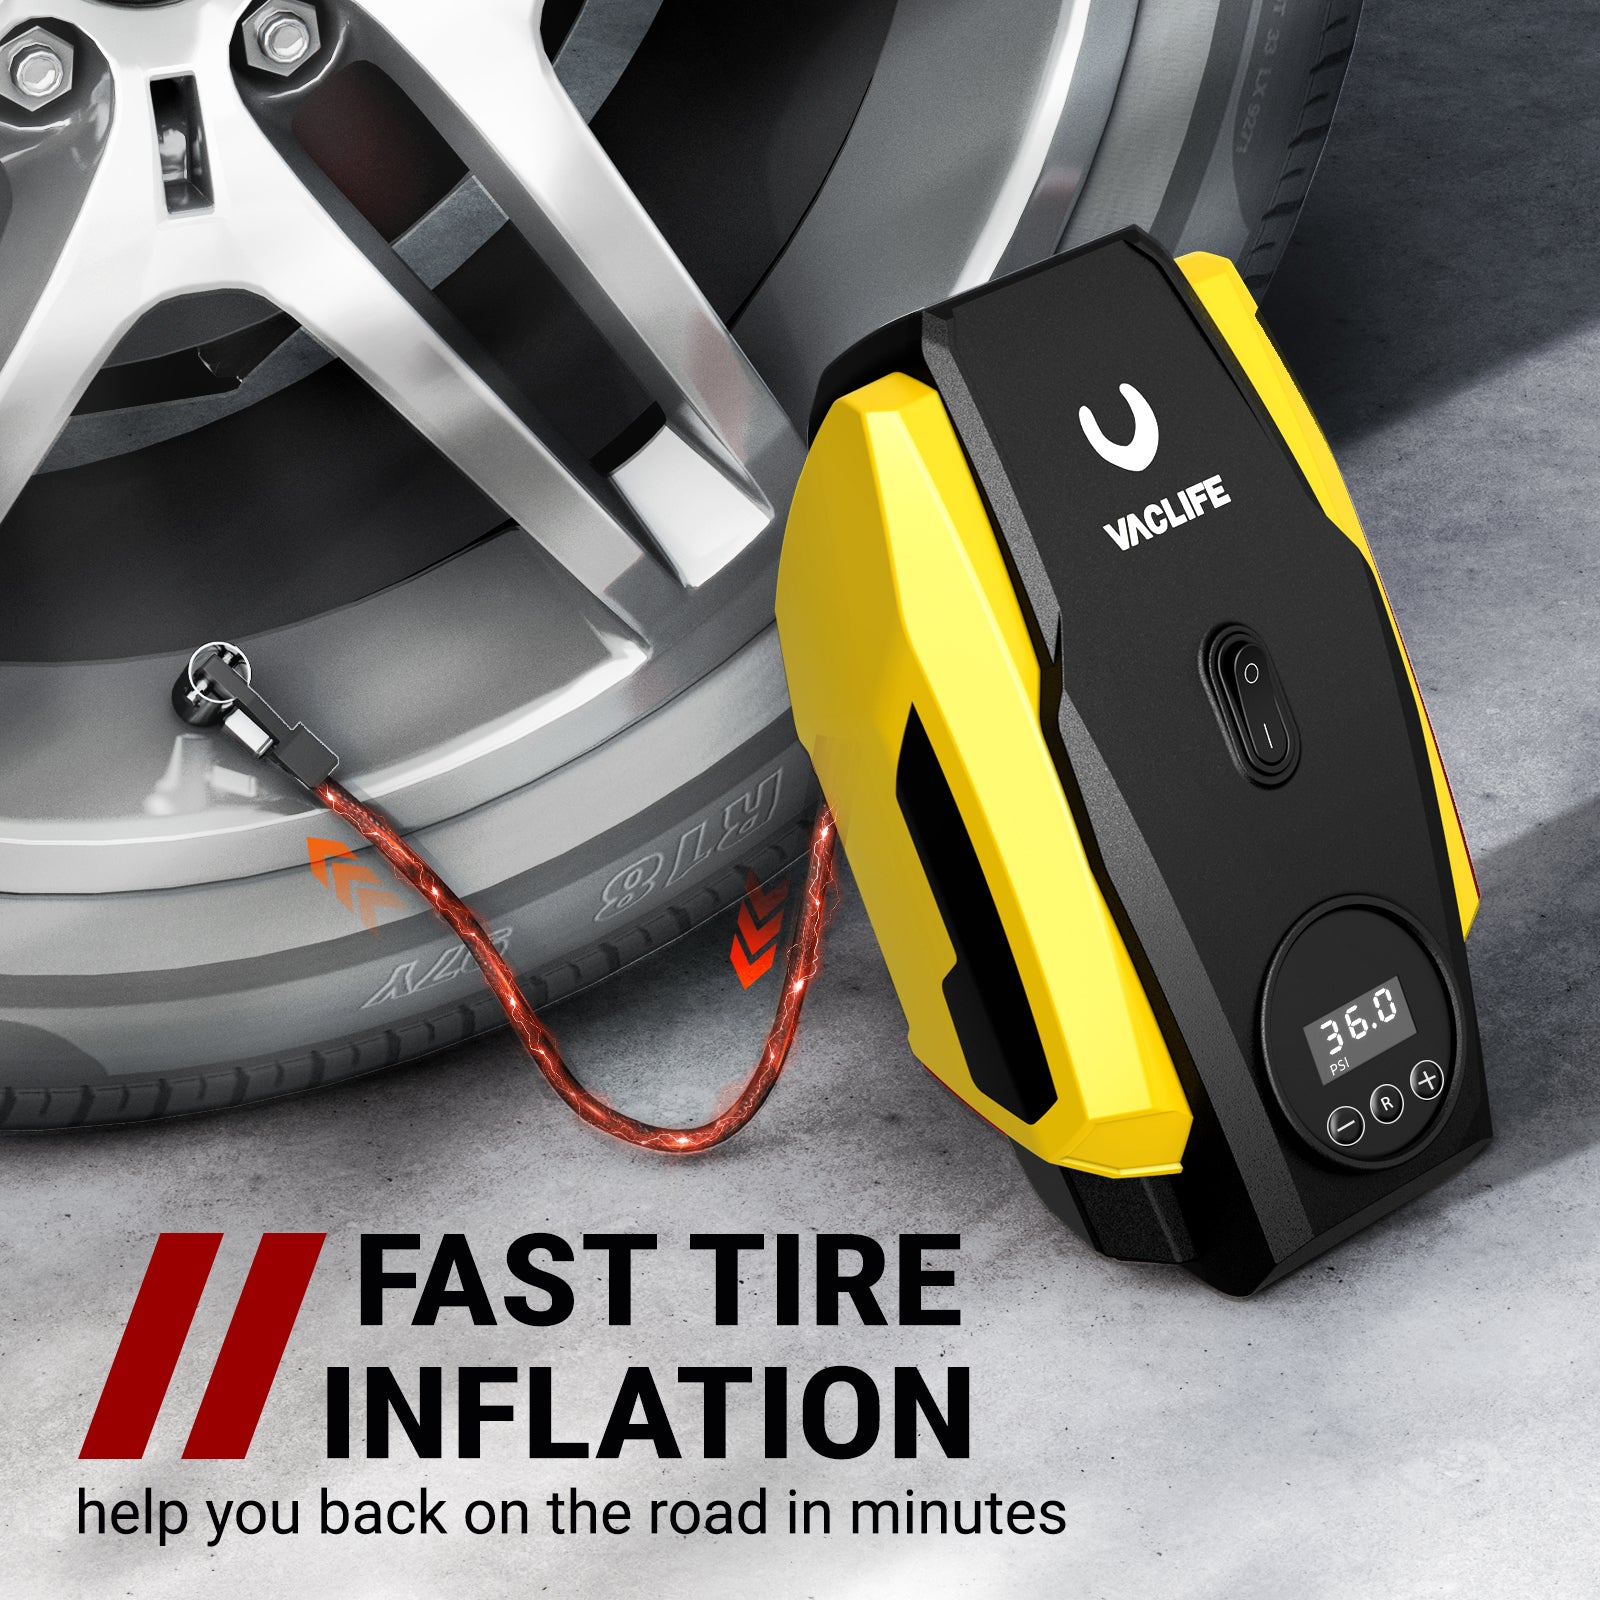 VacLife Tire Inflator Portable Air Compressor - Air Pump for Car Tires